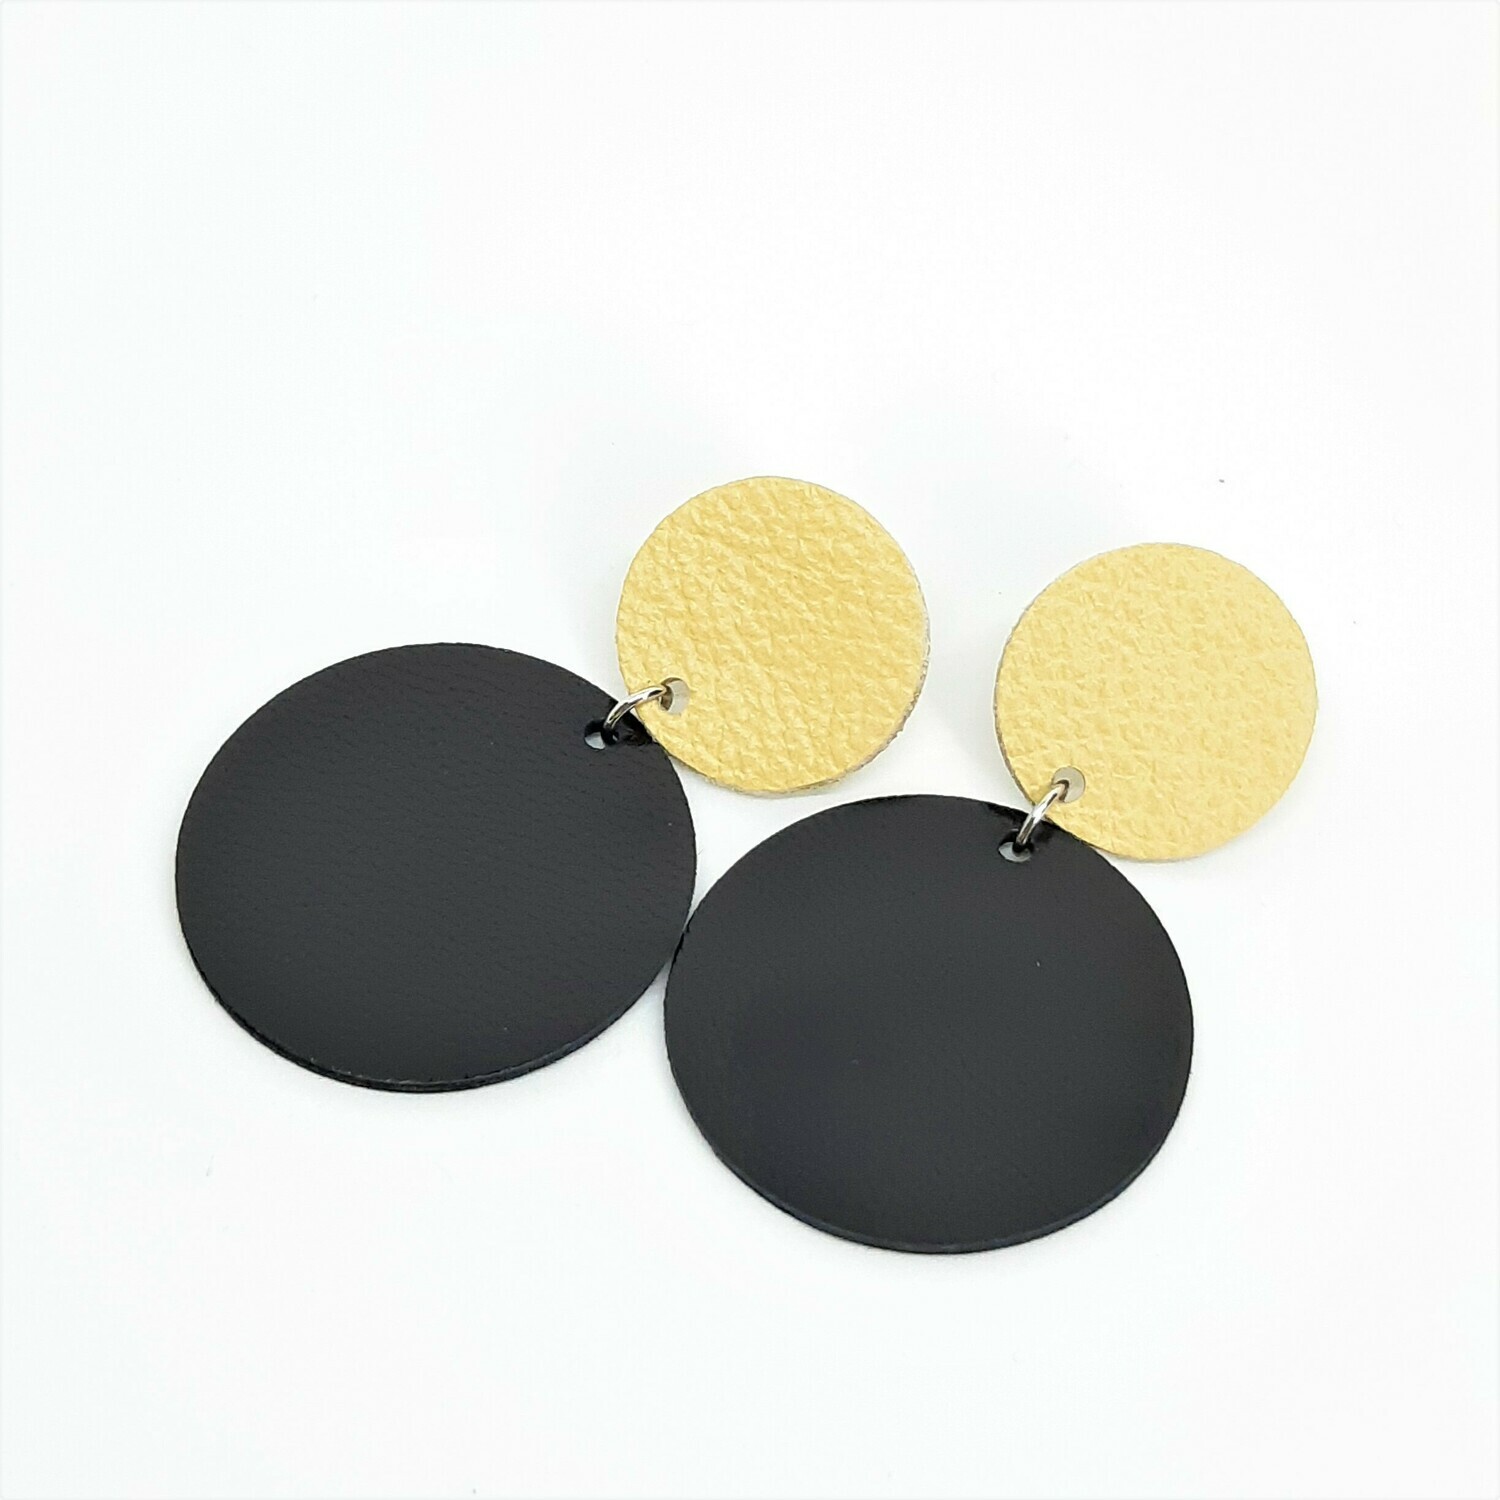 Statement oorbellen duo color - beige & zwart leder - L: 6cm